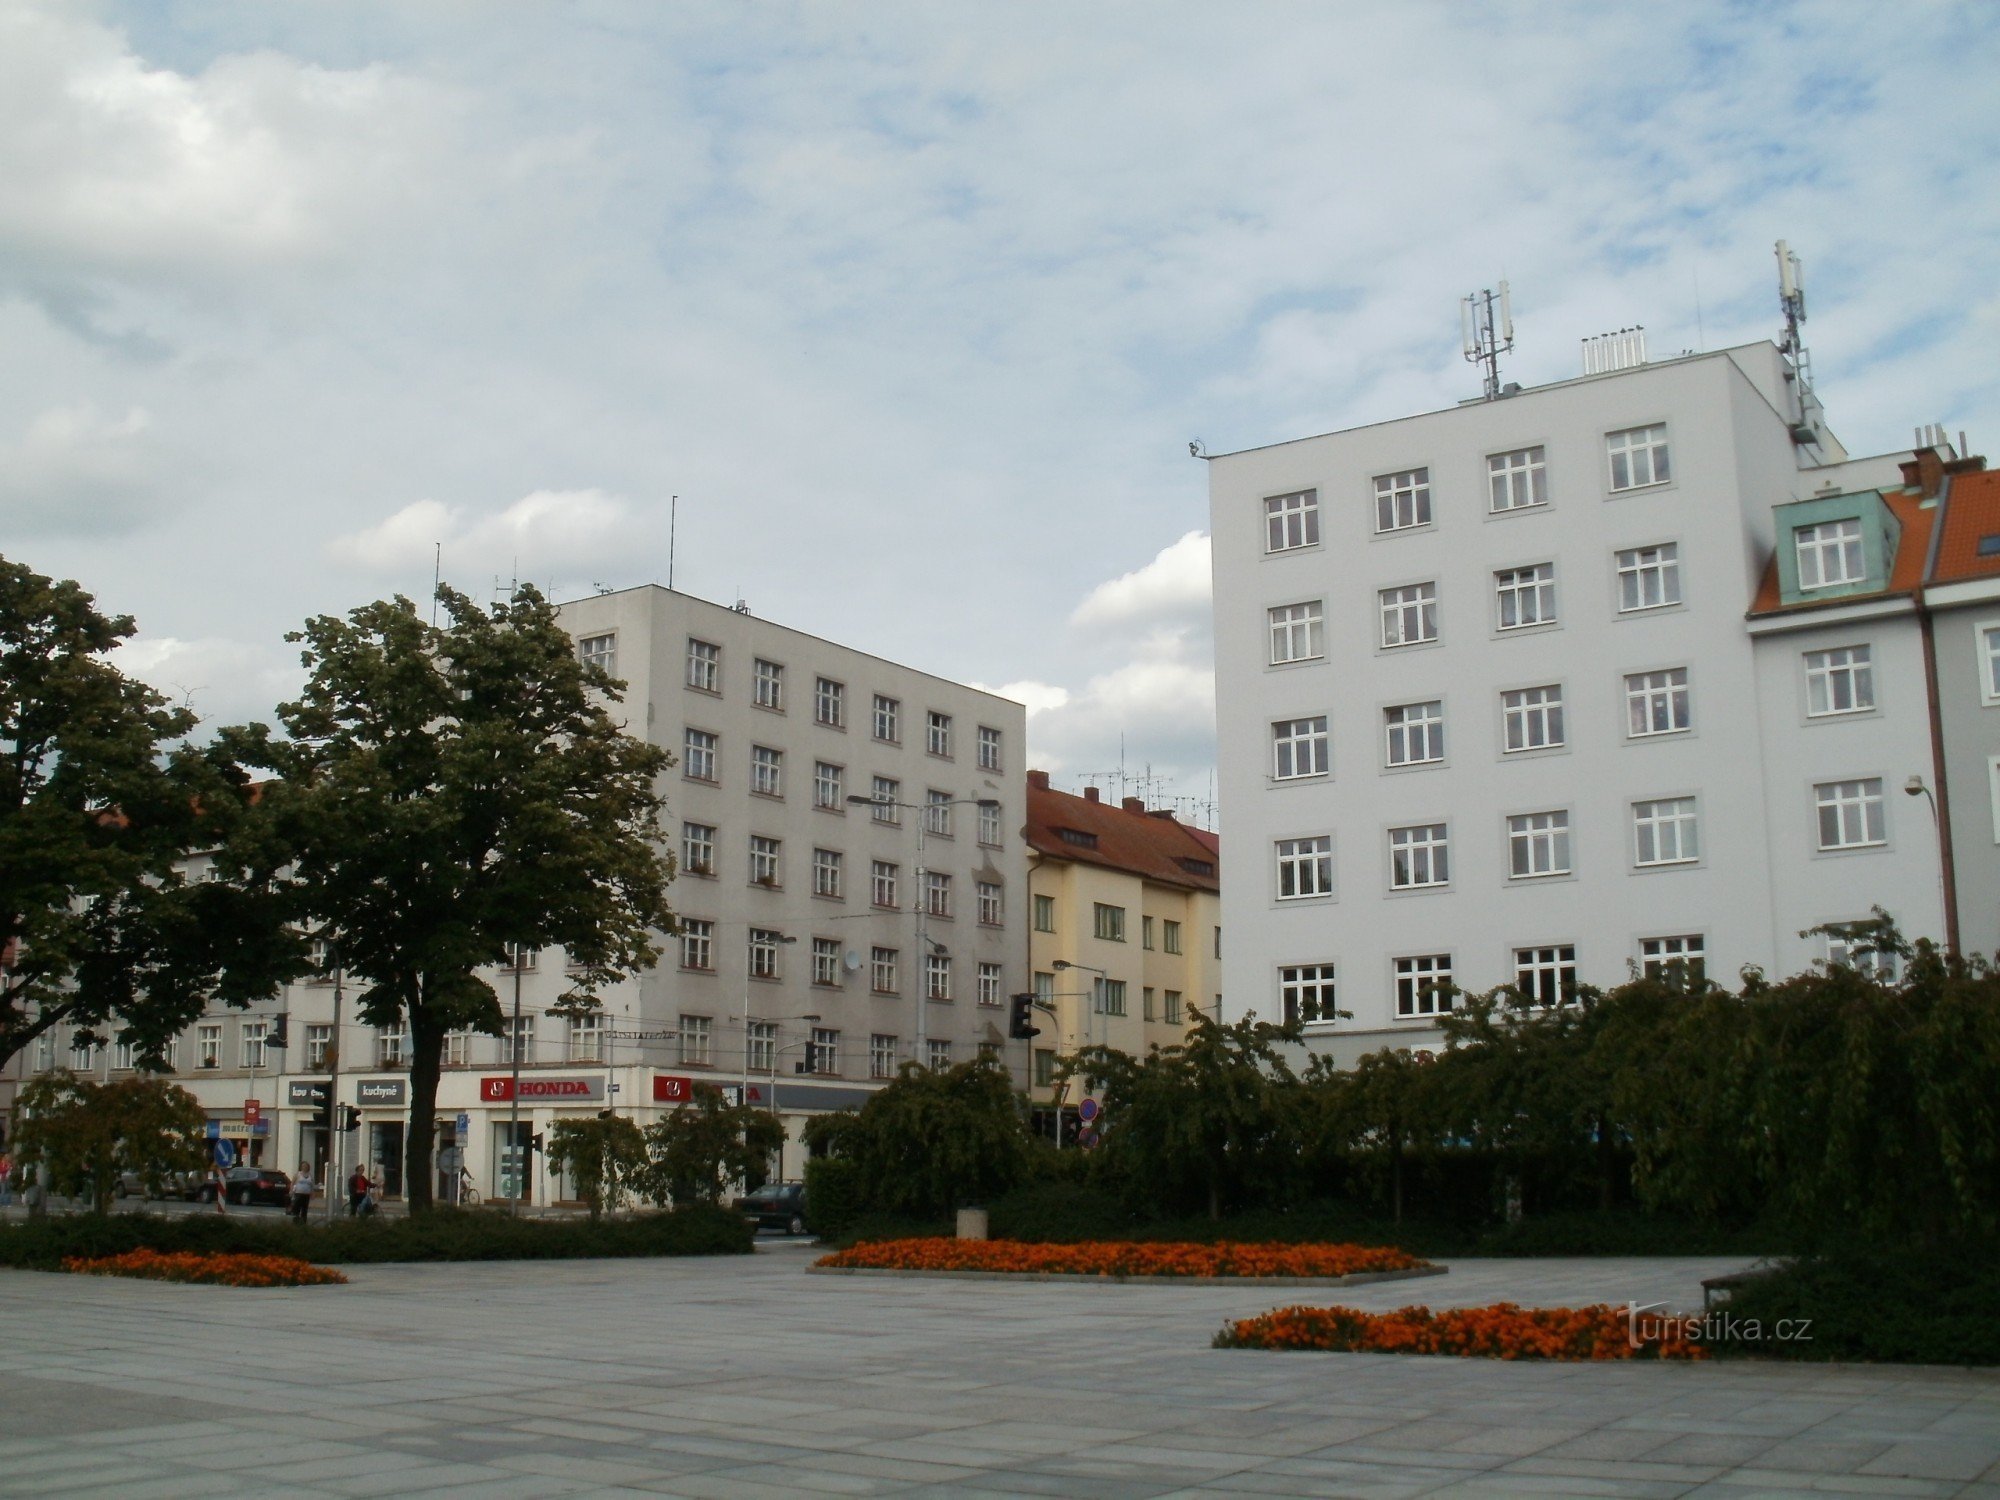 Hradec Králové - Πλατεία Ulrich